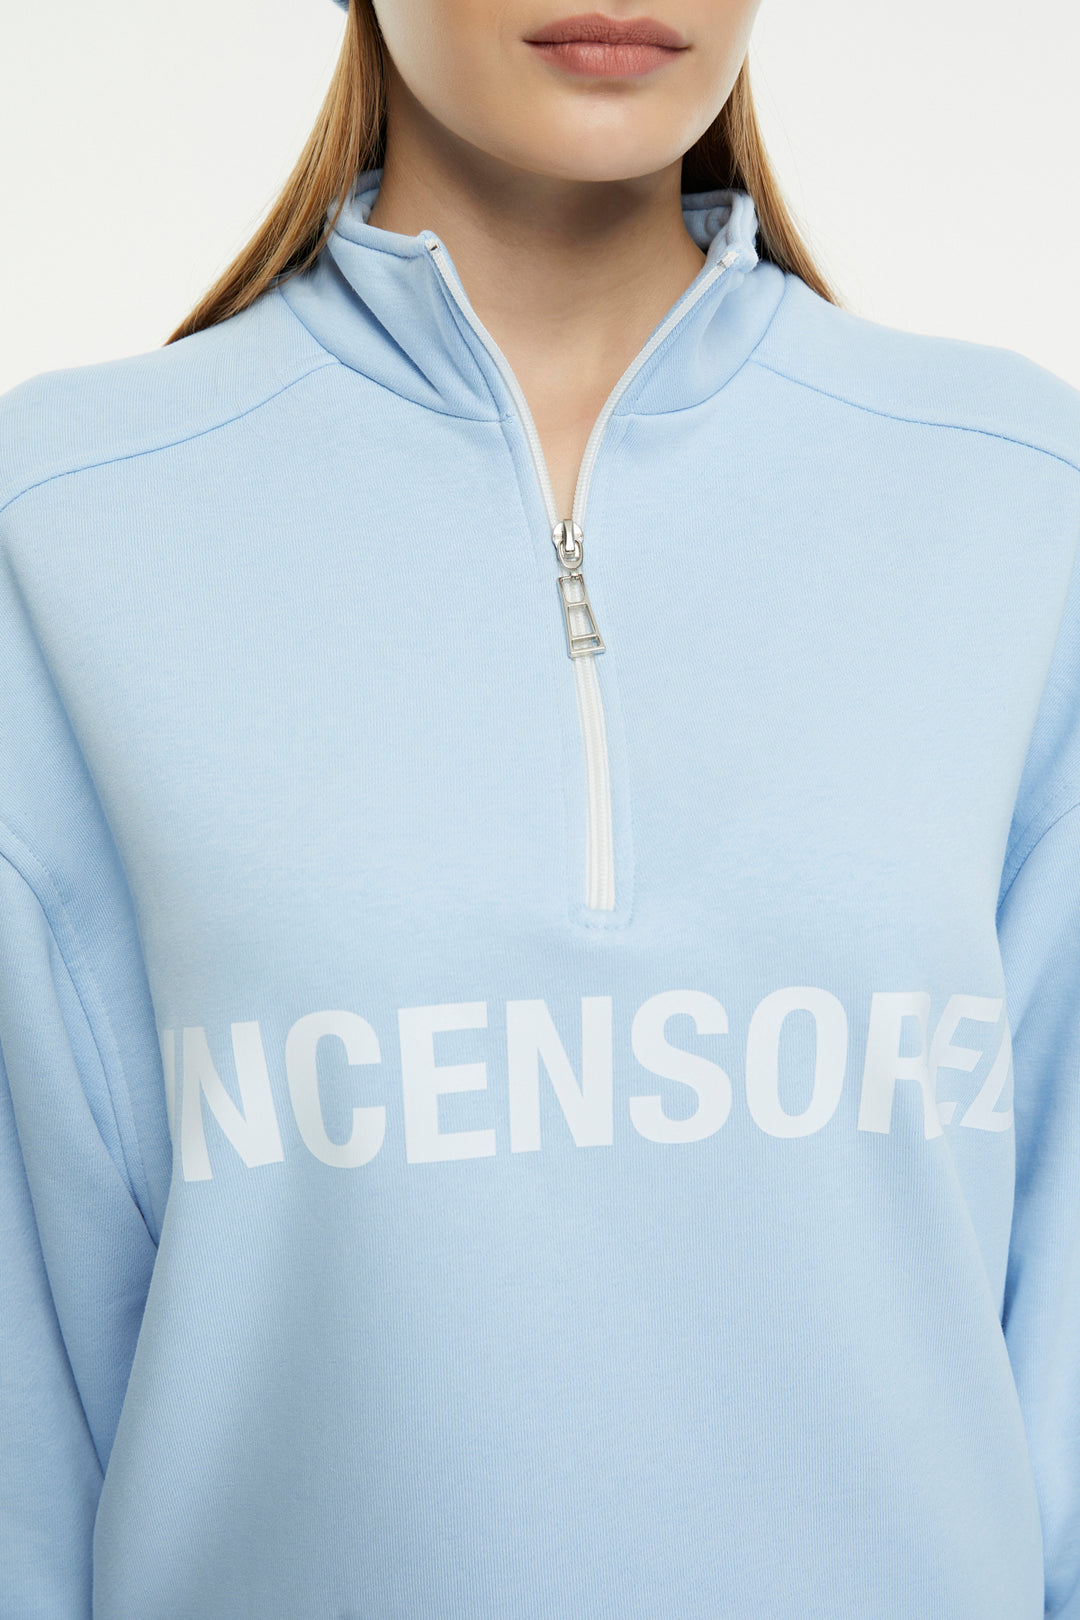 Uncensored / Zipper Women's Sweatshirt